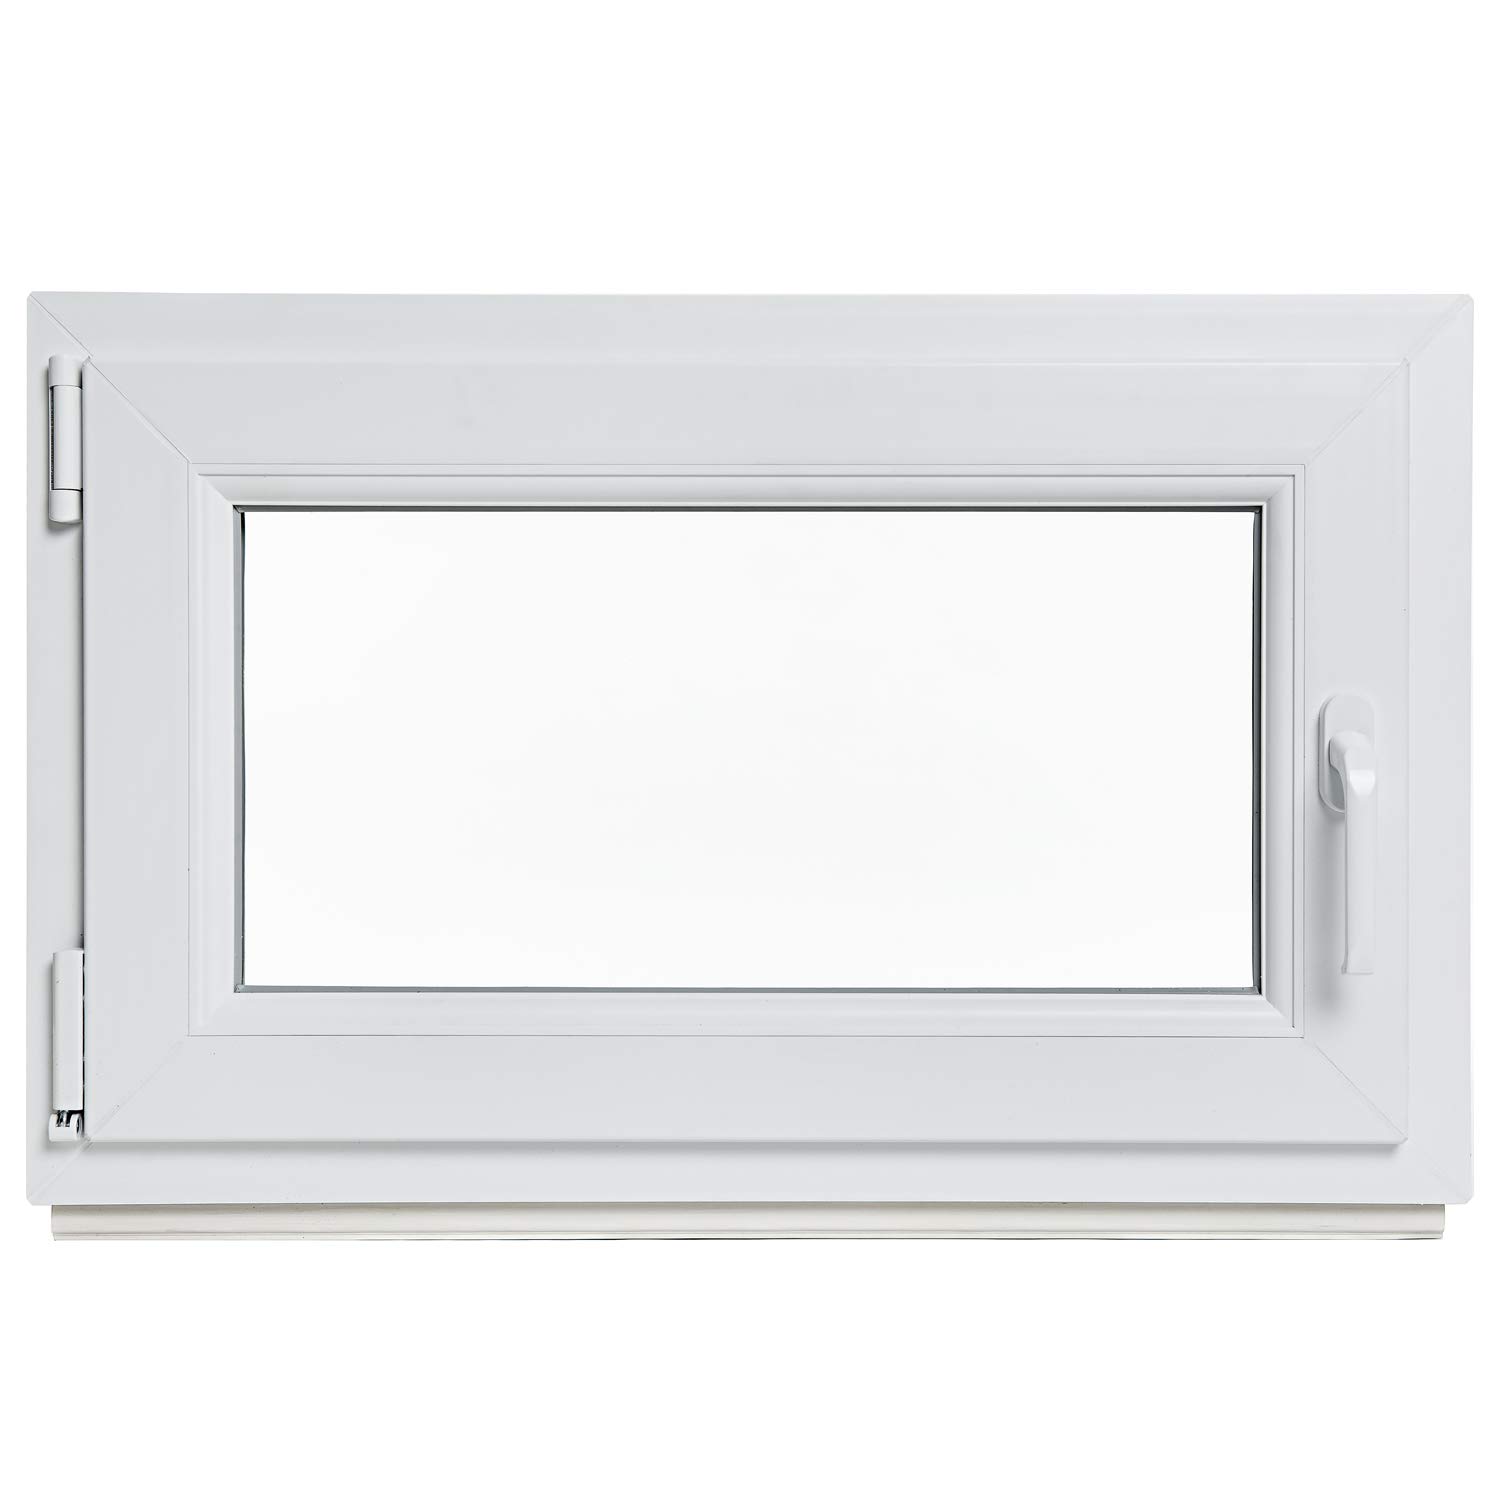 Kellerfenster - Kunststoff - Fenster - weiß - BxH: 90 x 40 cm - DIN links - 2-fach-Verglasung - Lagerware